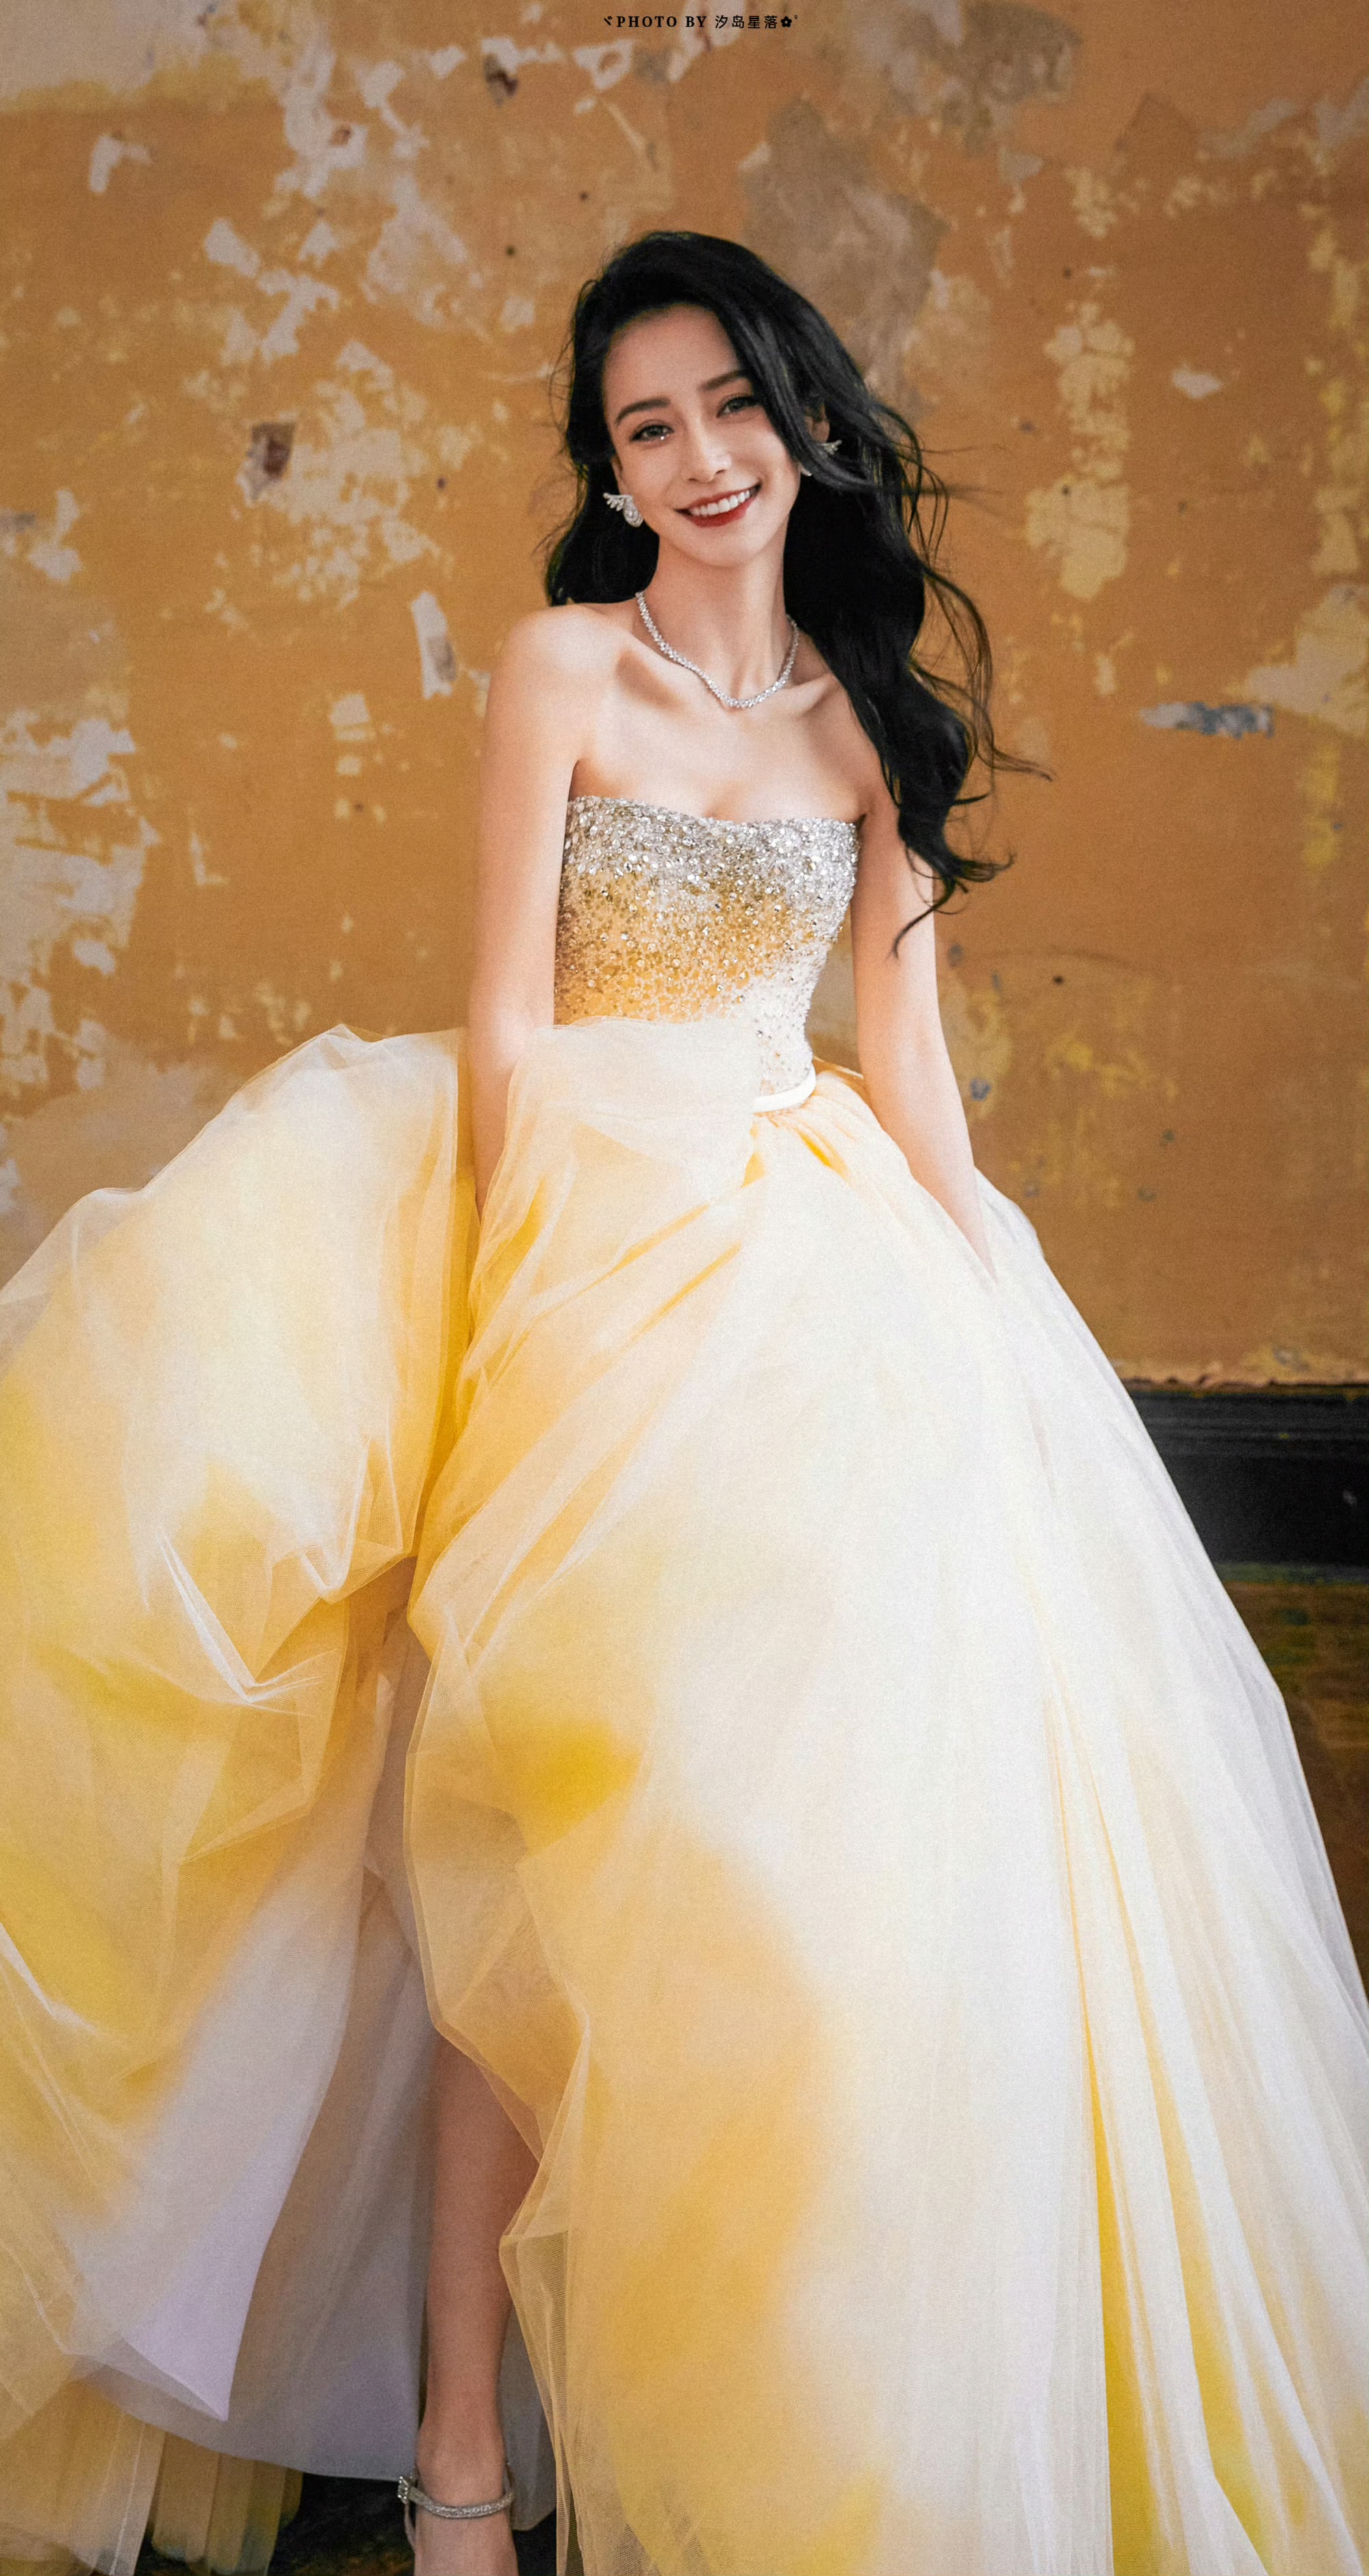 杨颖身着婚纱裙写真,笑起来真甜宛如一个幸福的女人